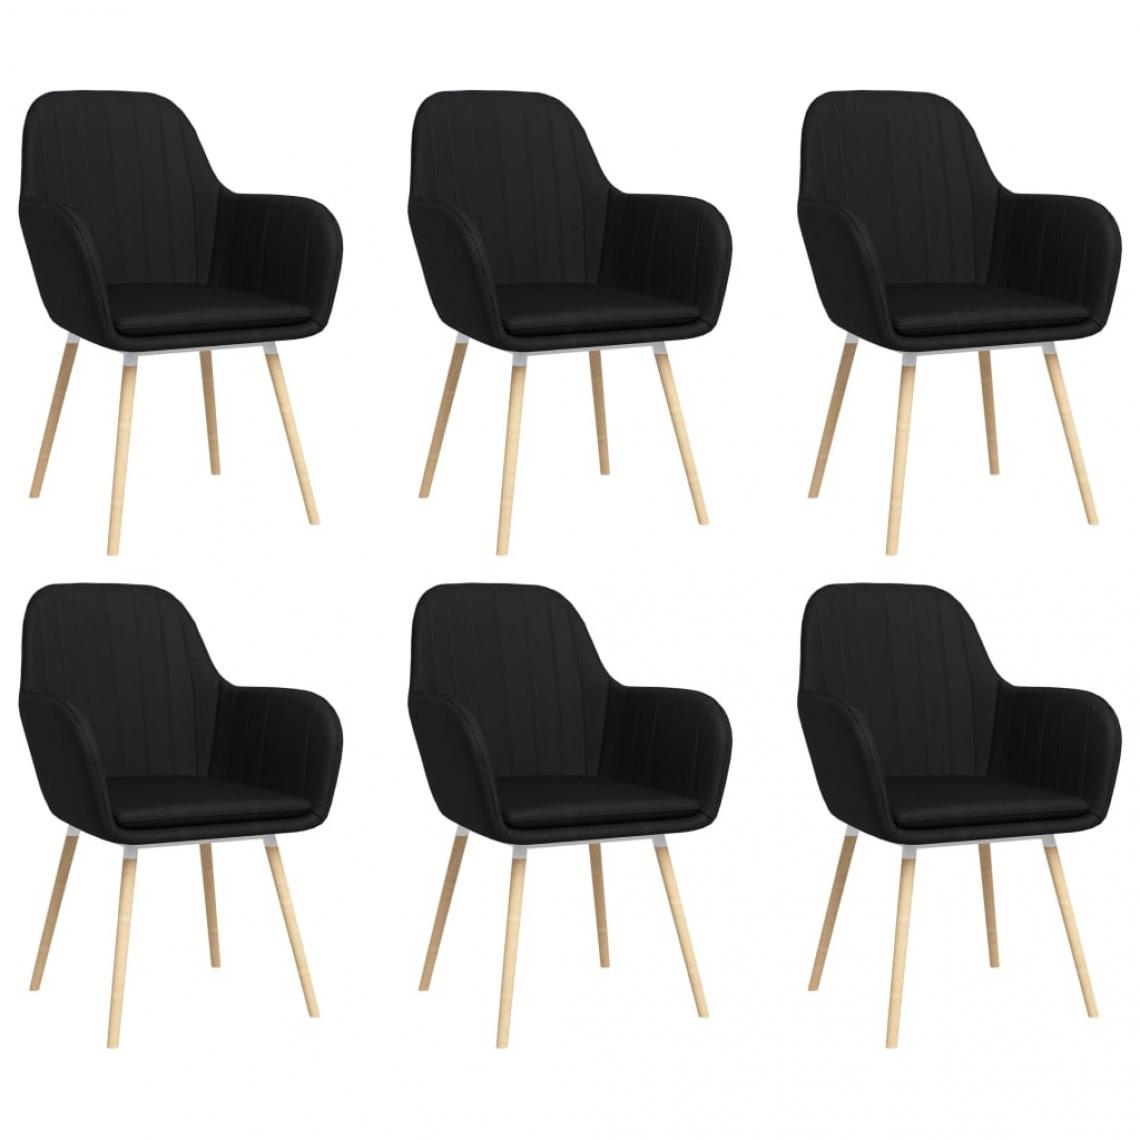 Decoshop26 - Lot de 6 chaises de salle à manger cuisine avec accoudoirs design élégant tissu noir CDS022135 - Chaises